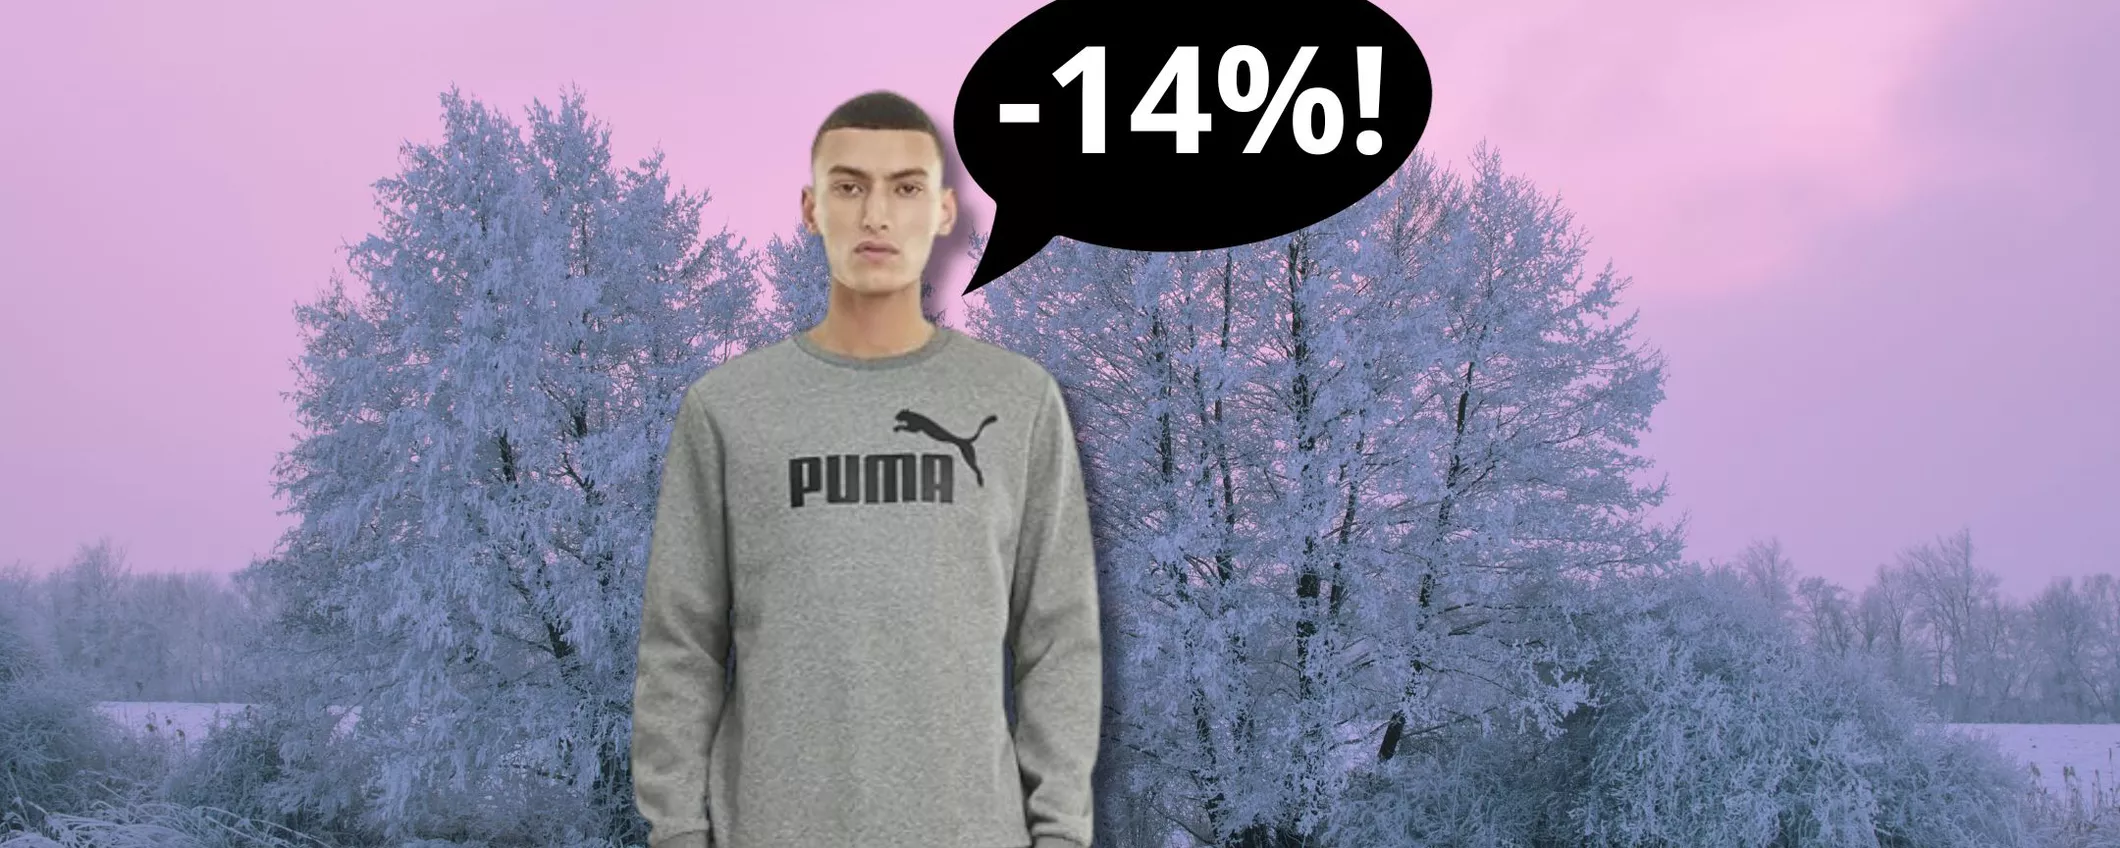 La splendida Felpa Puma girocollo color grigio è in OFFERTA: se hai questa taglia risparmi il 14%!